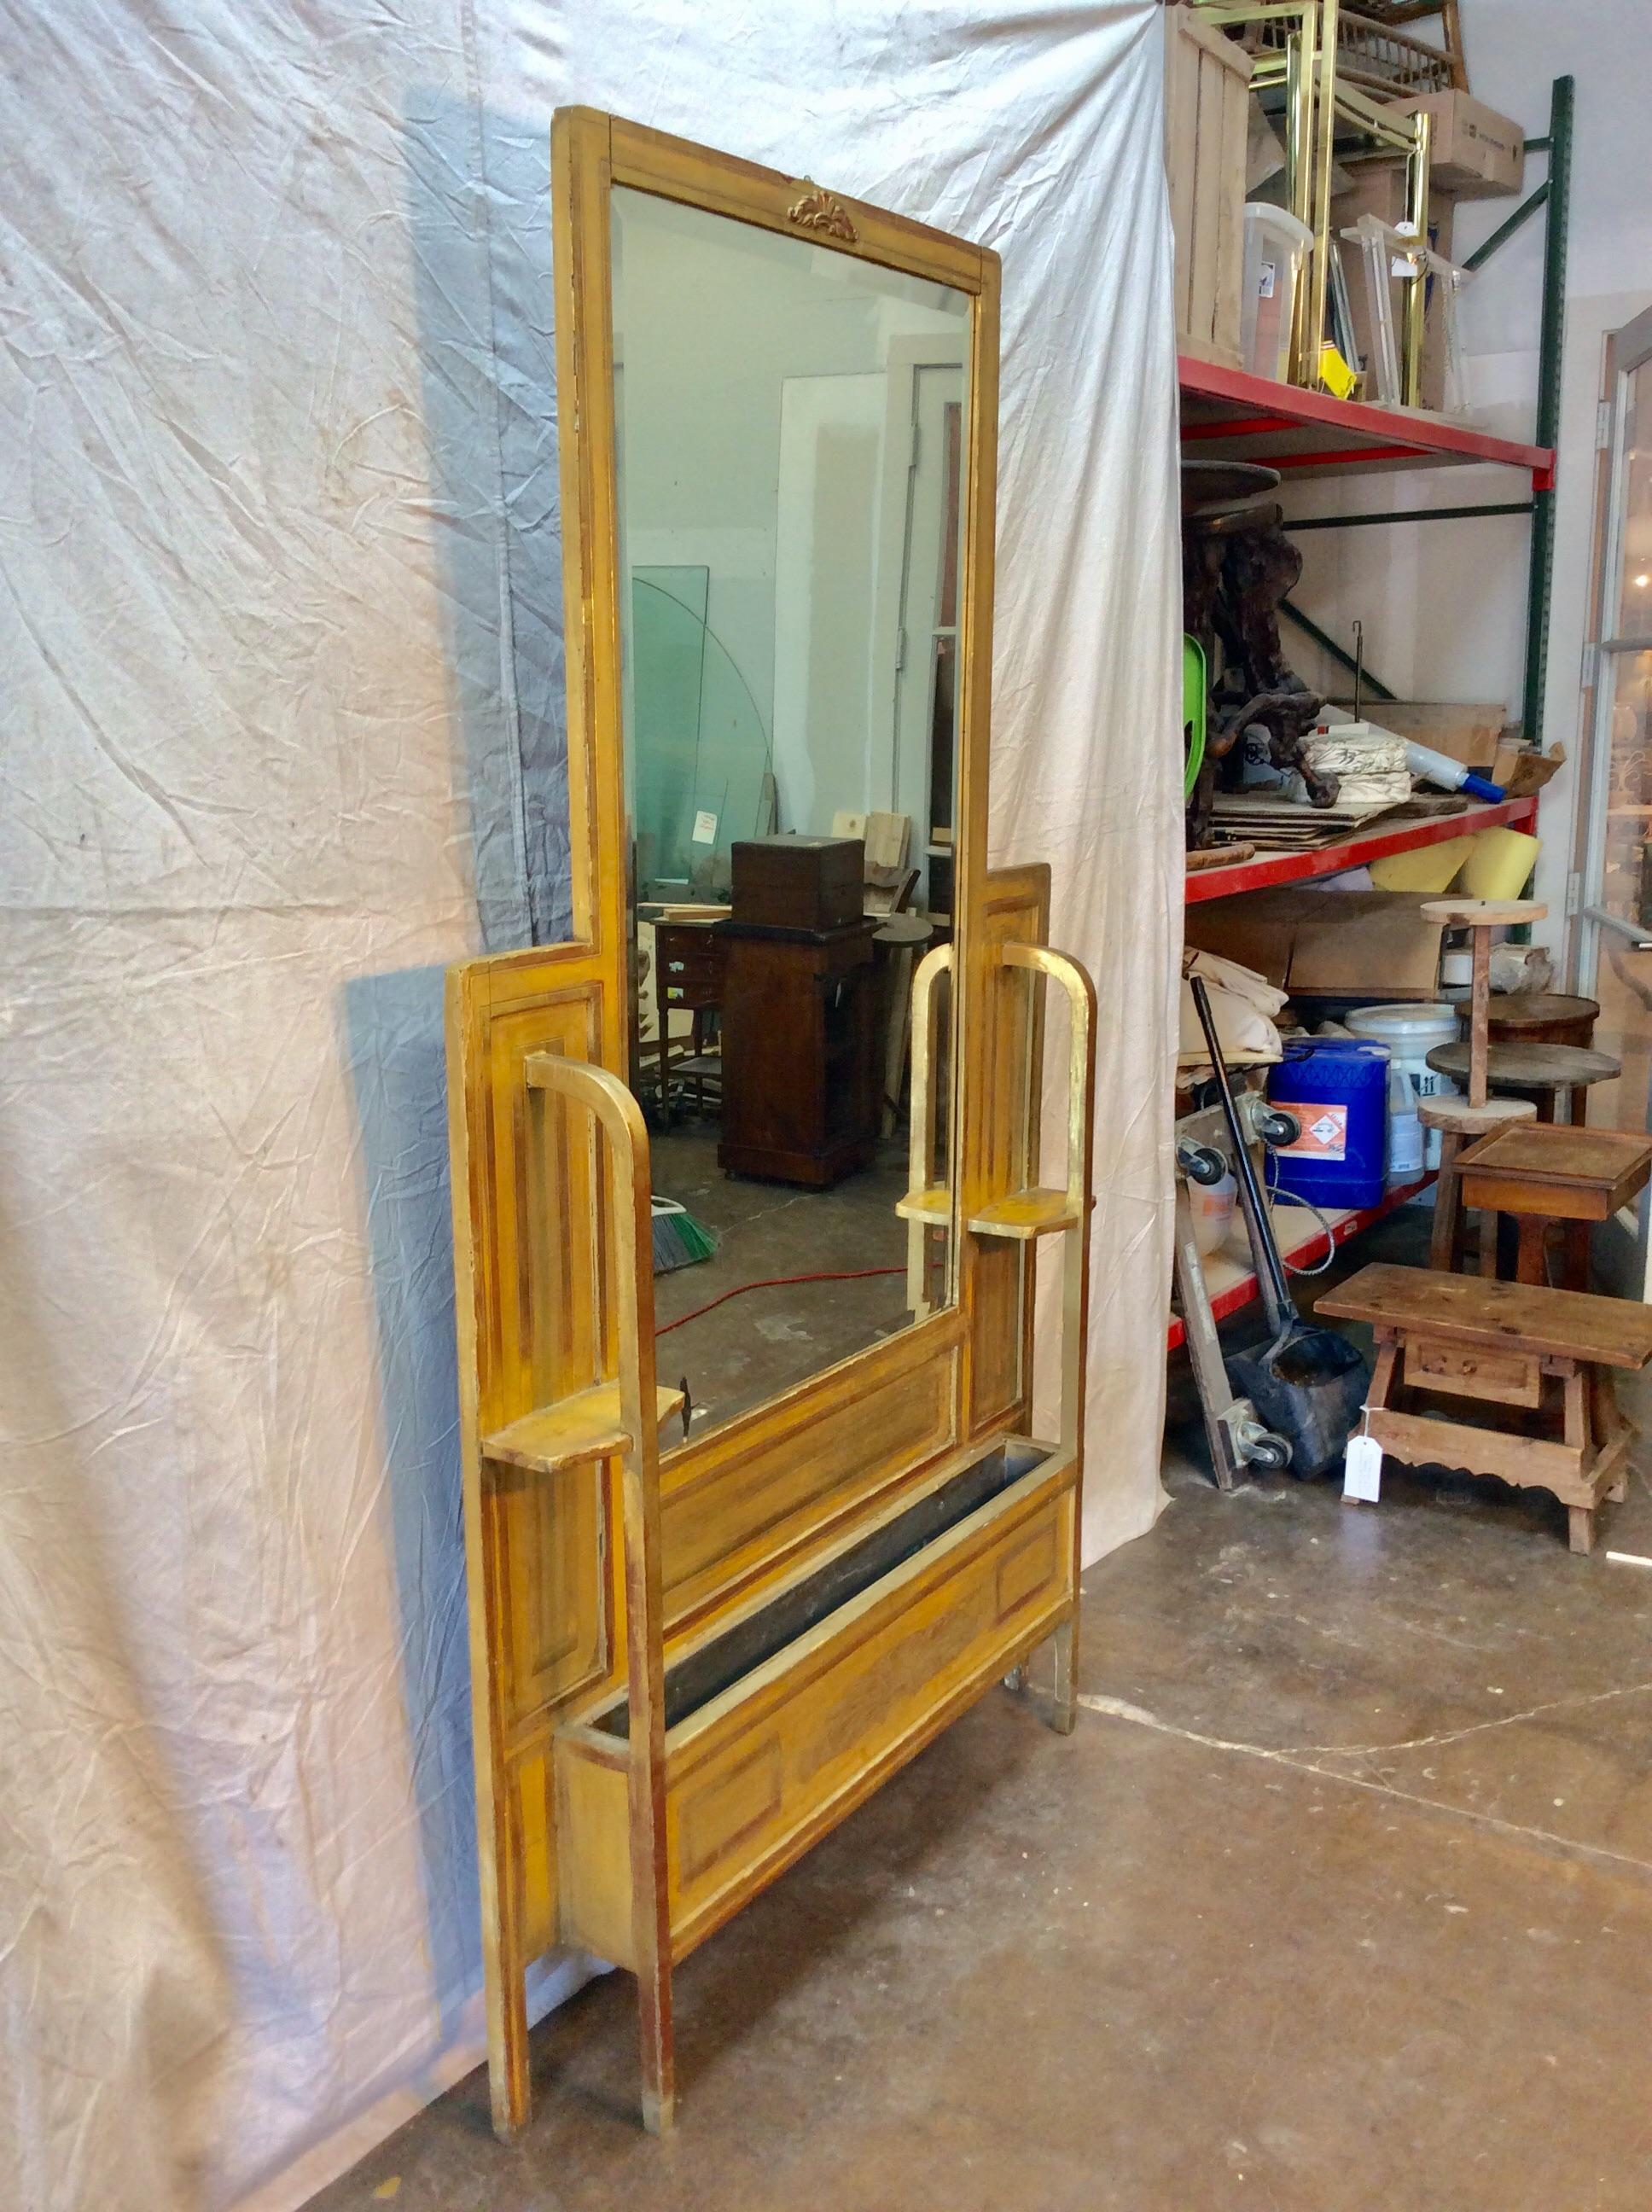 Trouvé dans le sud de la France, ce miroir de salle Art déco français doré du début des années 1900 a été utilisé dans un hôtel parisien. La pièce comporte un miroir biseauté orné d'une décoration feuillue dans sa partie supérieure. La base,